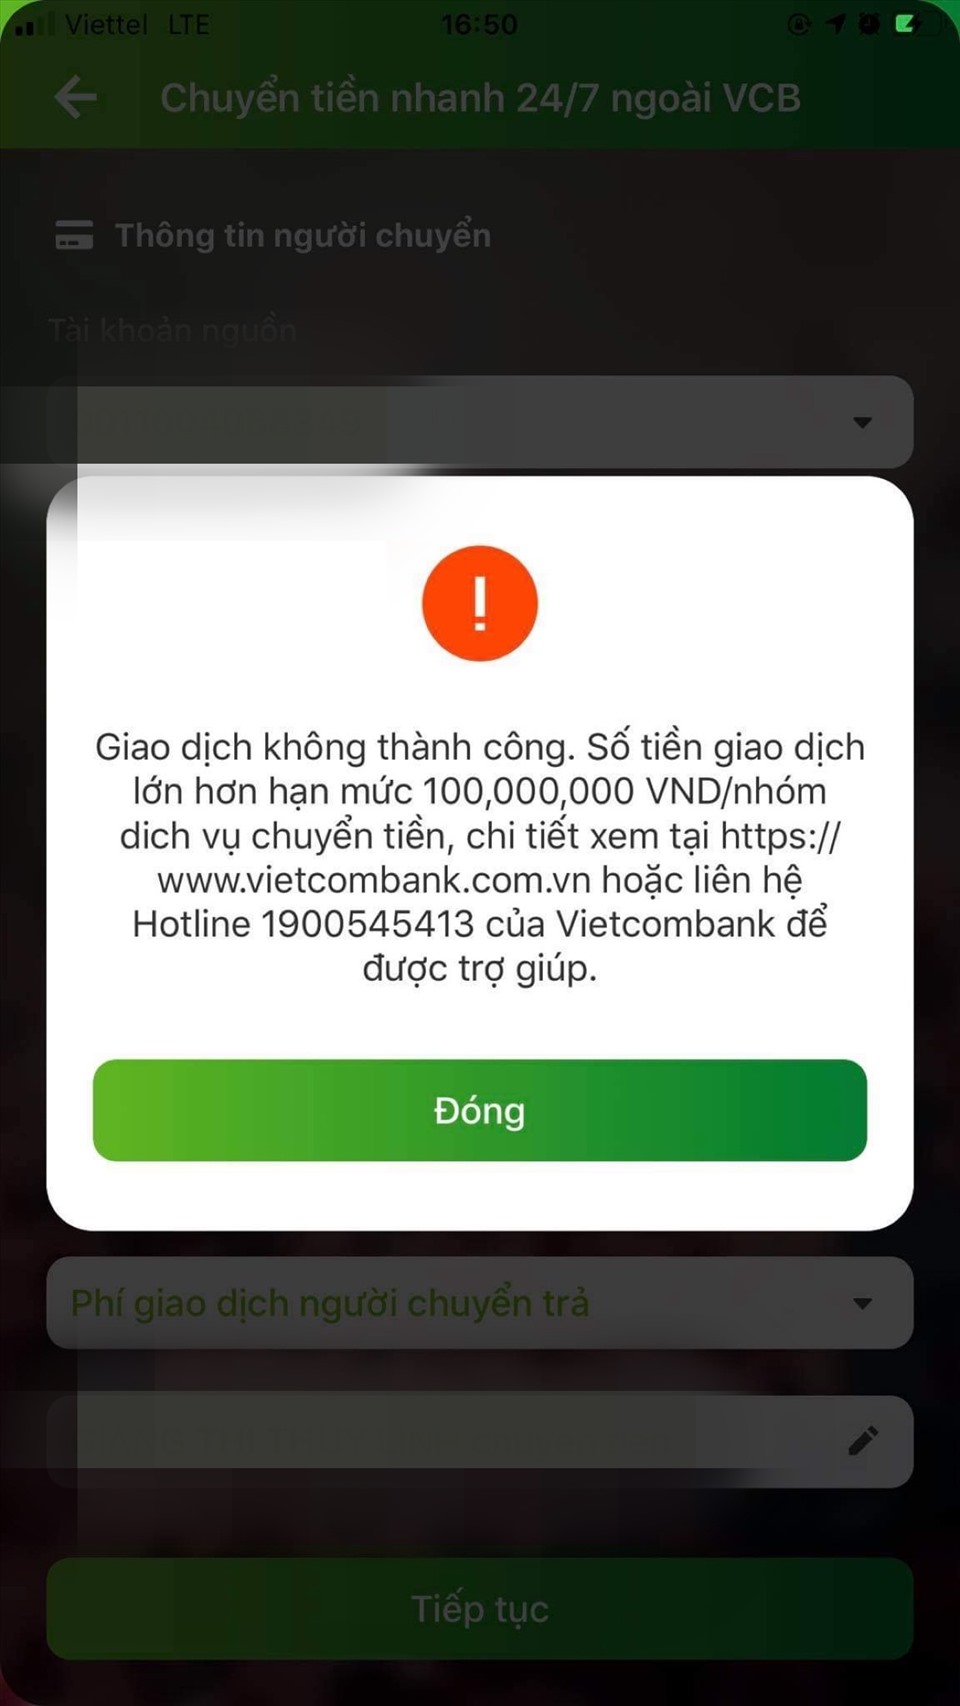 Tin nhắn báo không giao dịch thành công trên VCB DigiBank. Ảnh chụp màn hình